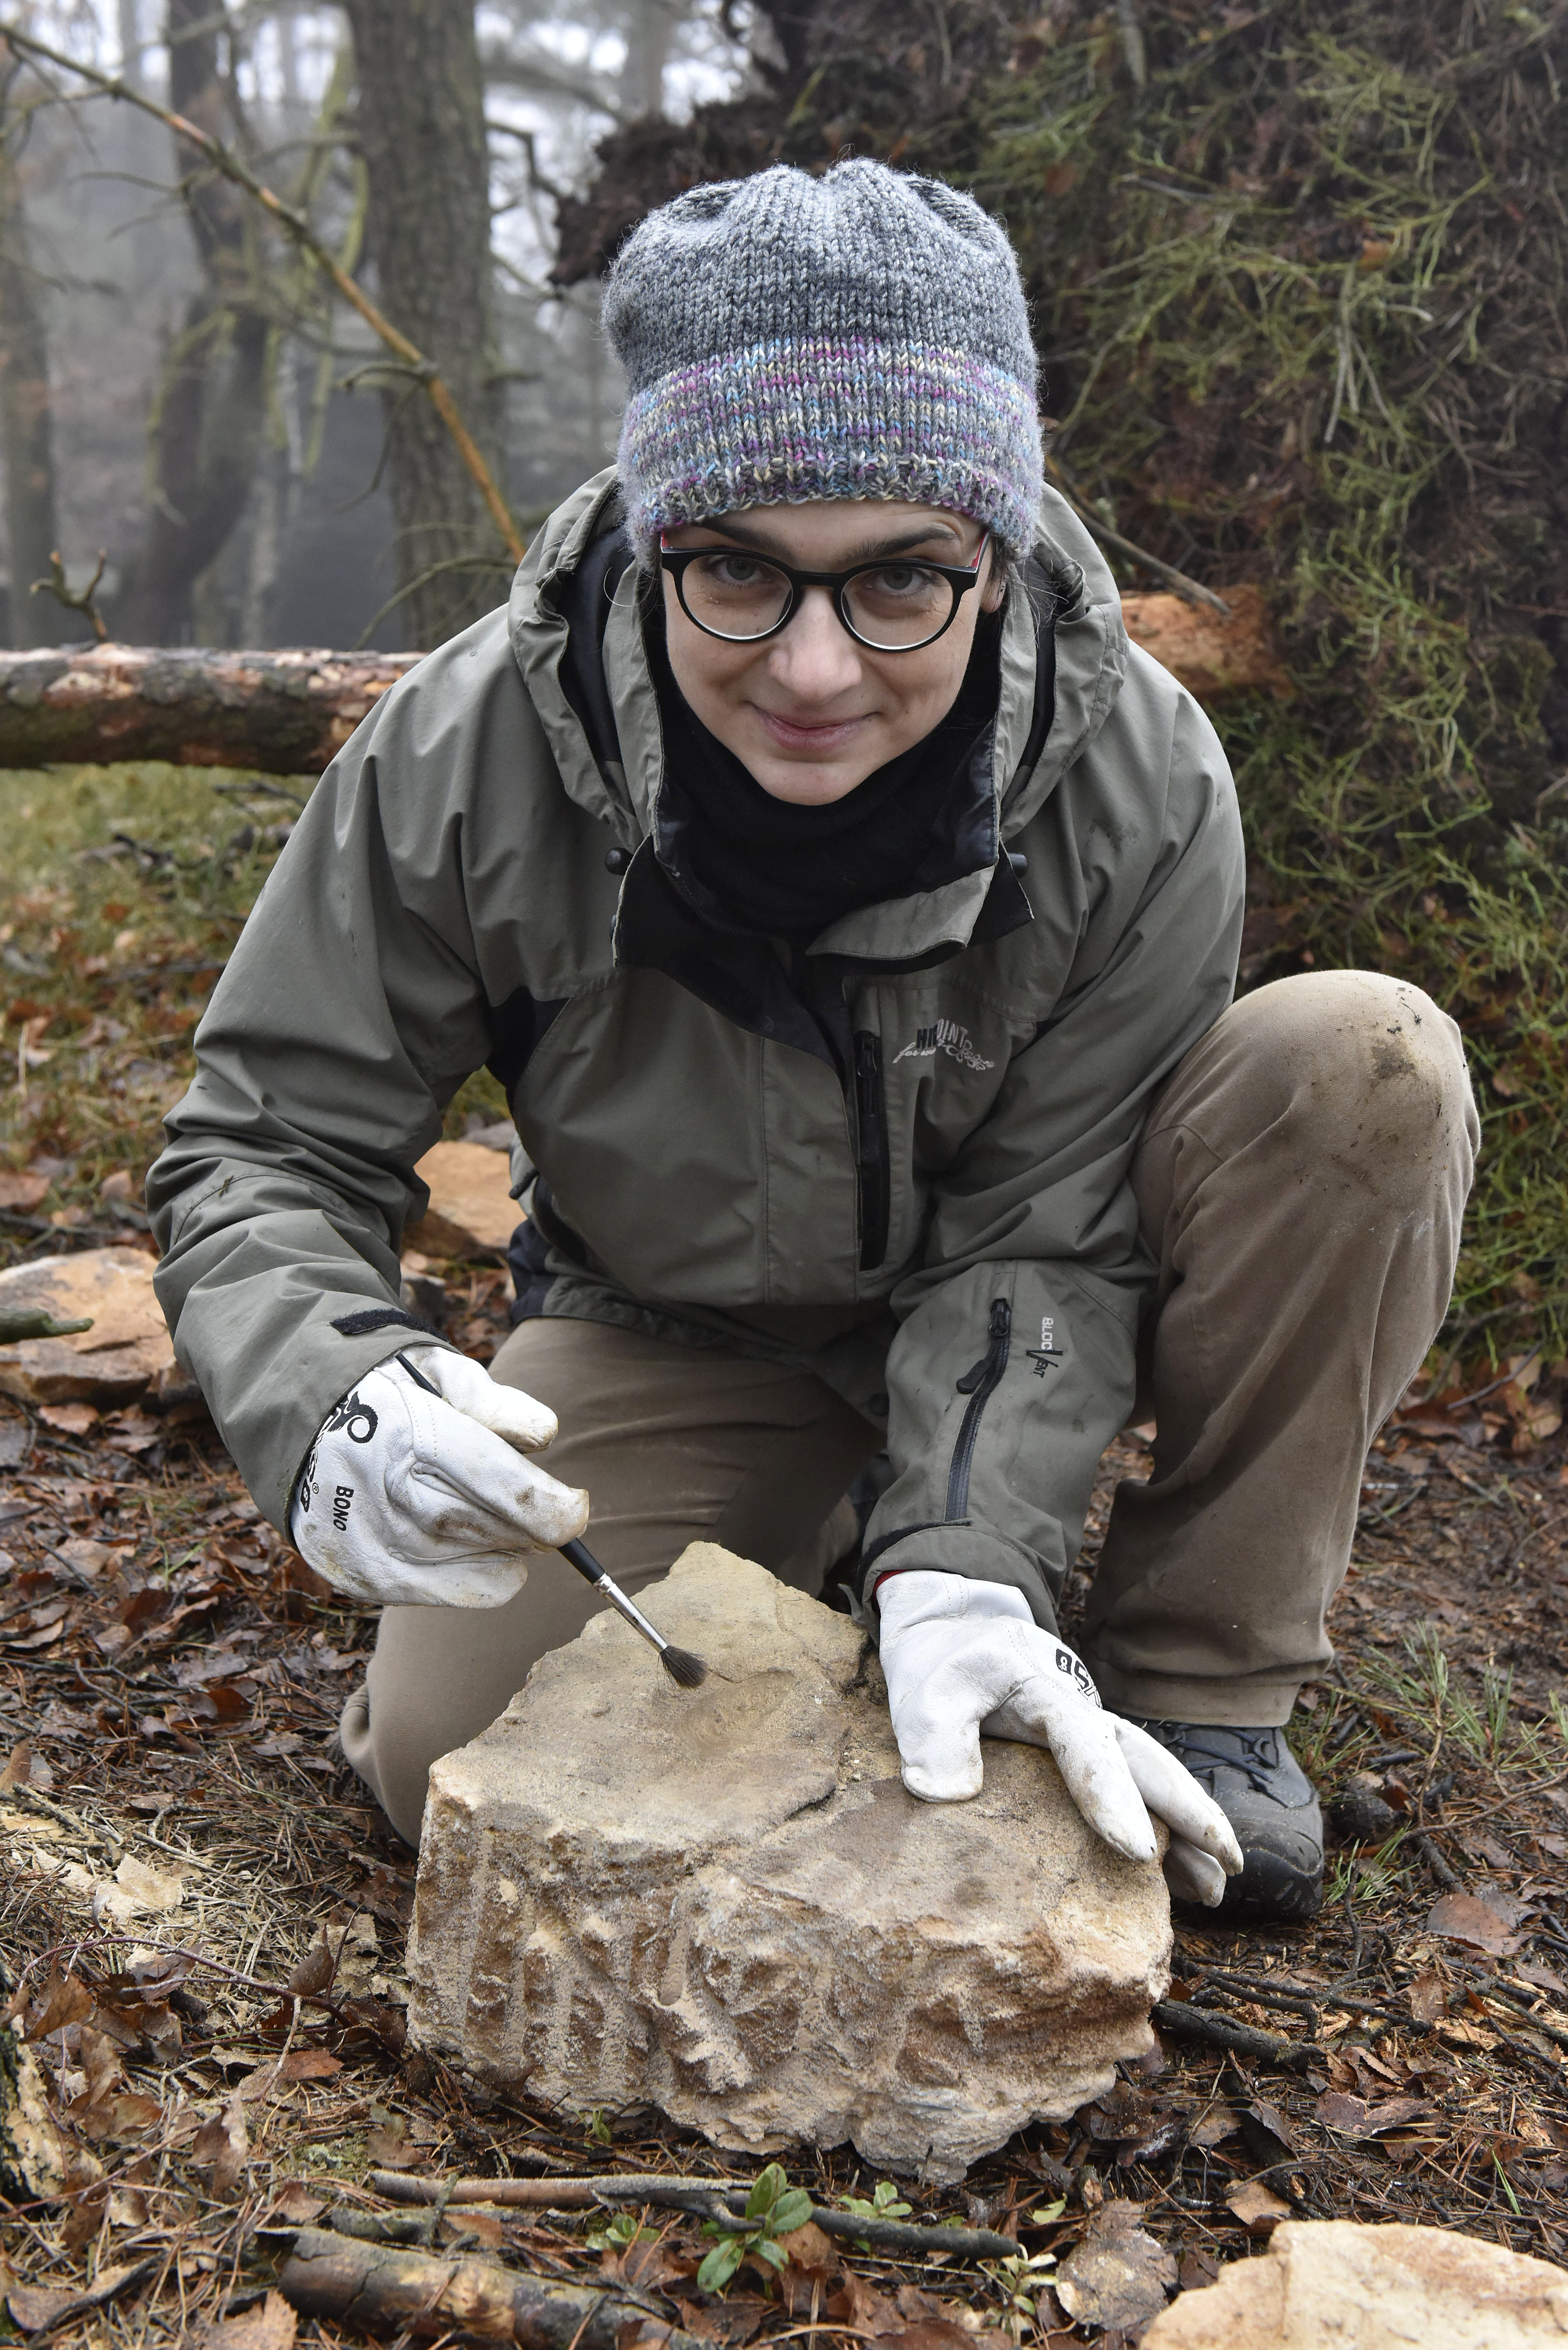 Geoložka Zuzana Vařilová ukazuje fosílii nalezenou v Tiských stěnách